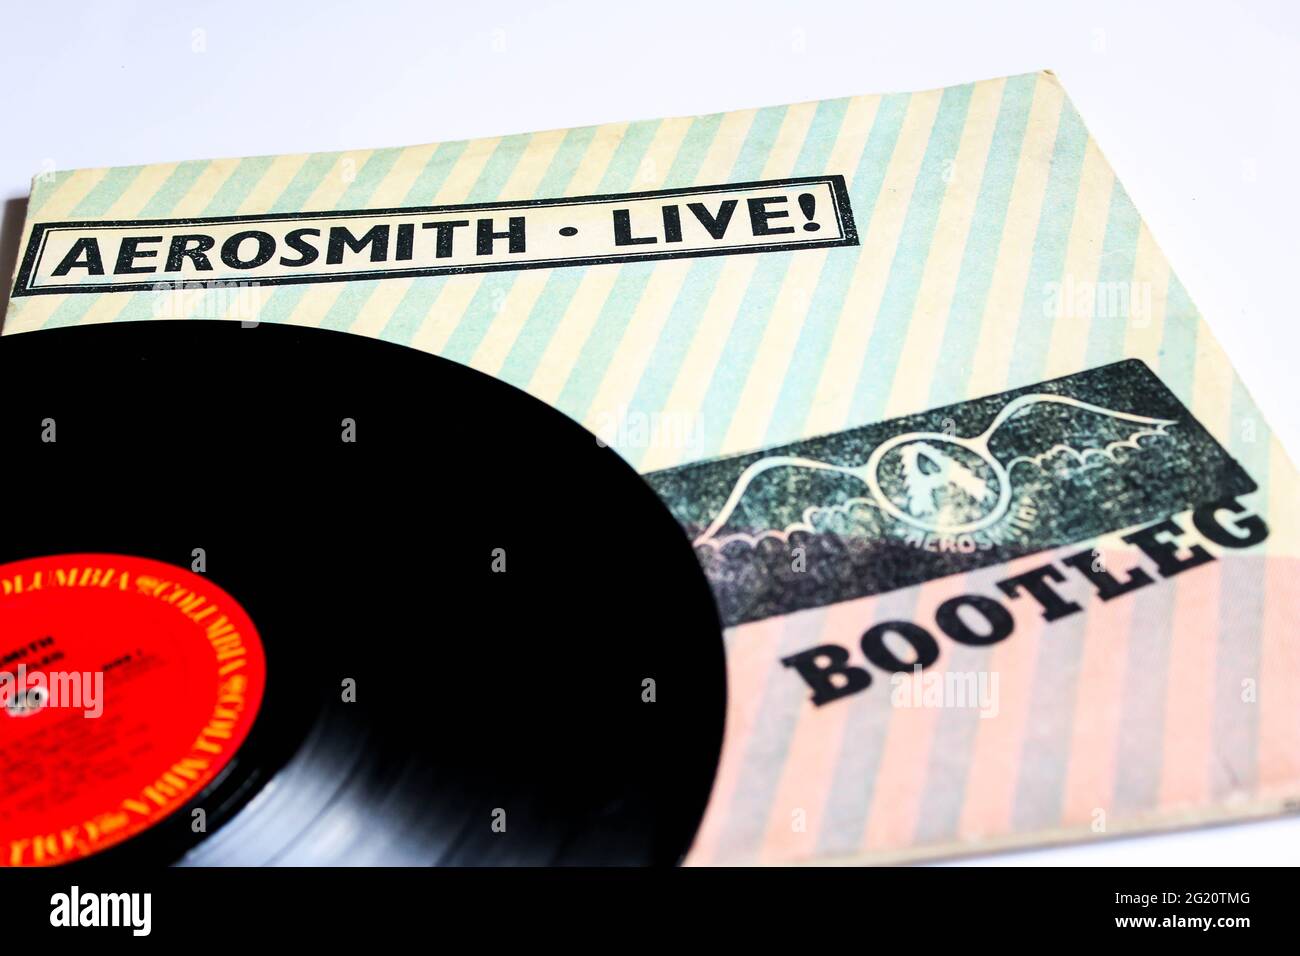 Klassische Rockband, Aerosmith, Musikalbum auf Vinyl-Schallplatte. Bootleg Genannt. Albumcover Stockfoto